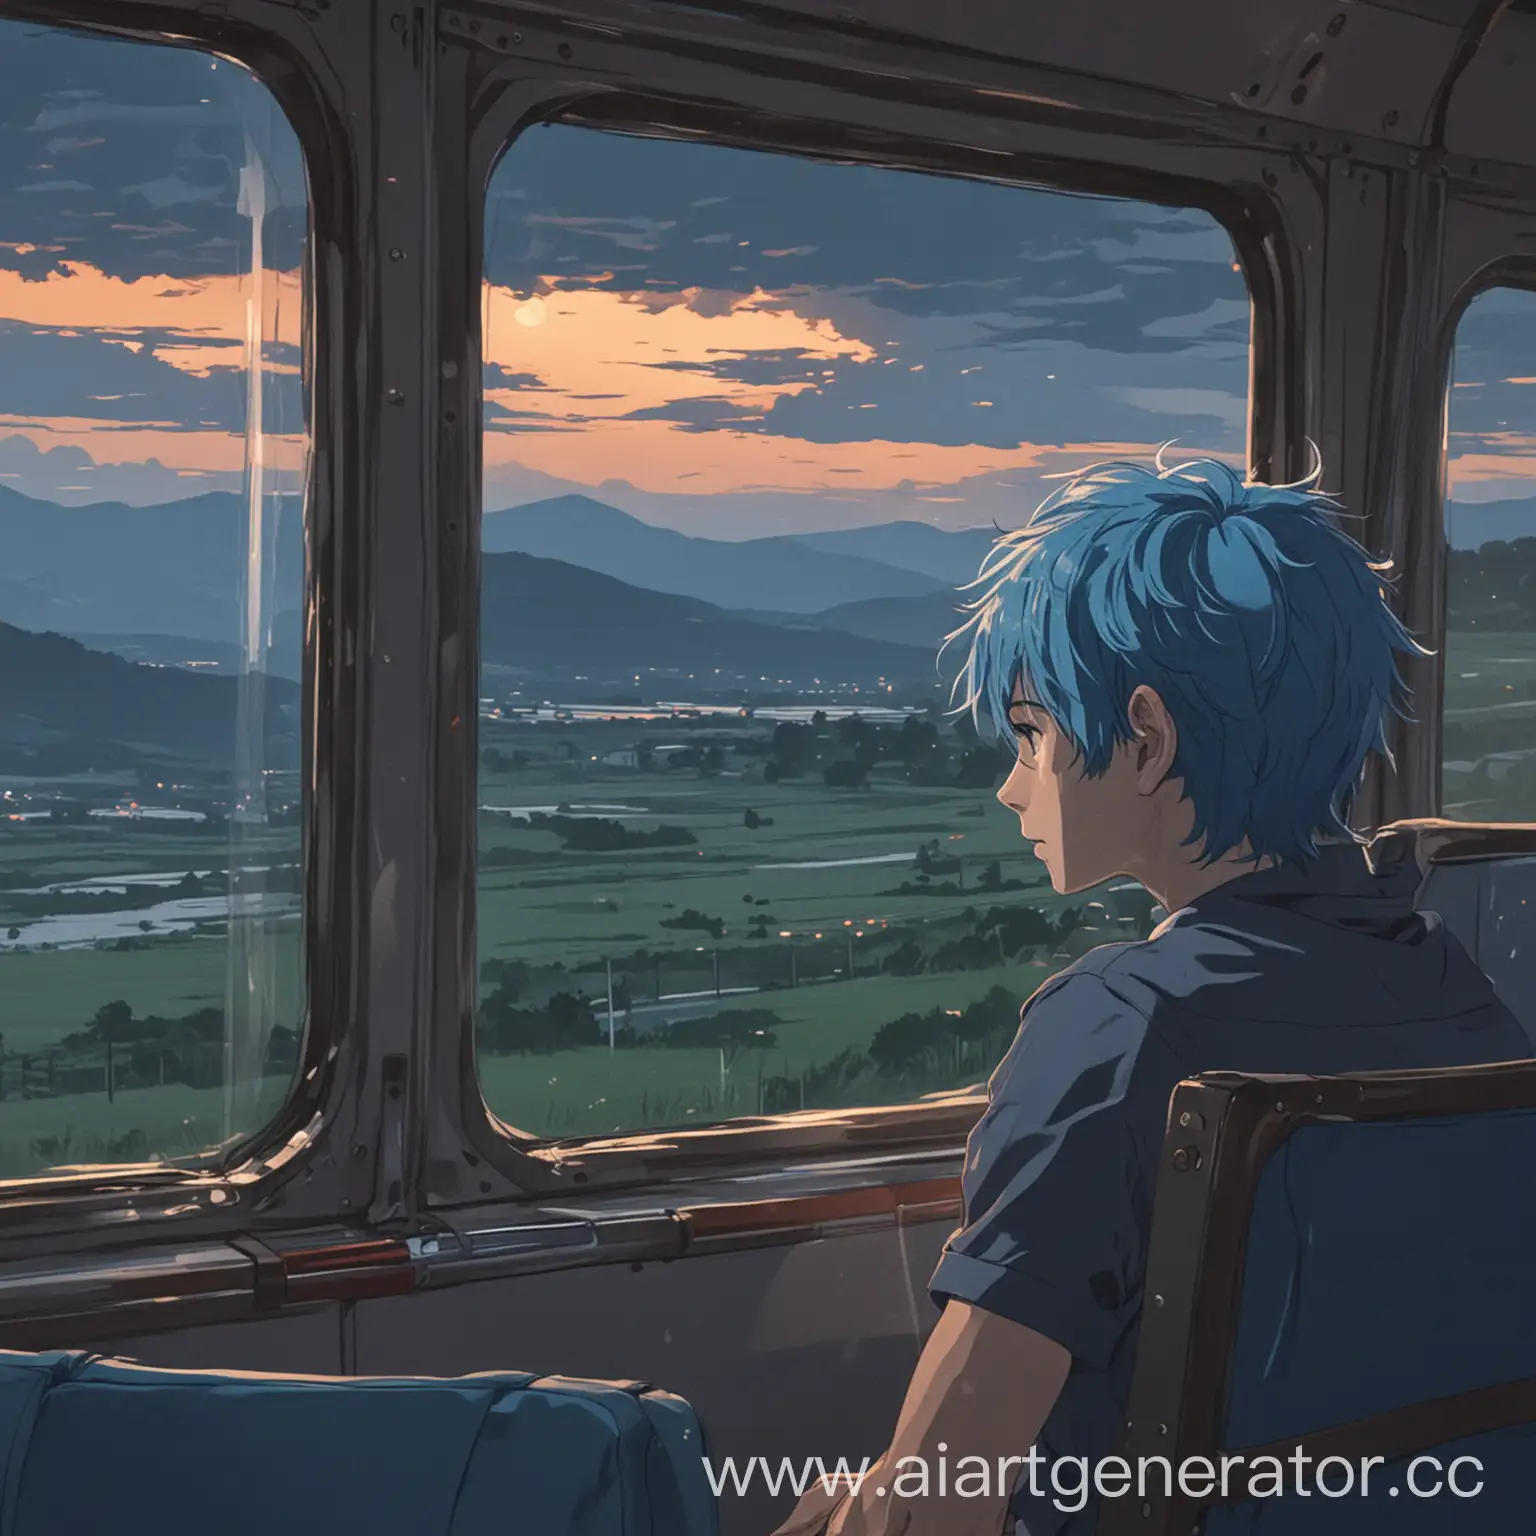 вид из окна автобуса, автобус внутри, вечер, парень смотрит в окно, пейзаж, парень с синими волосами, автобусные кресла, пассажир сидит  в кресле, отдаленный план, аниме, рисунок